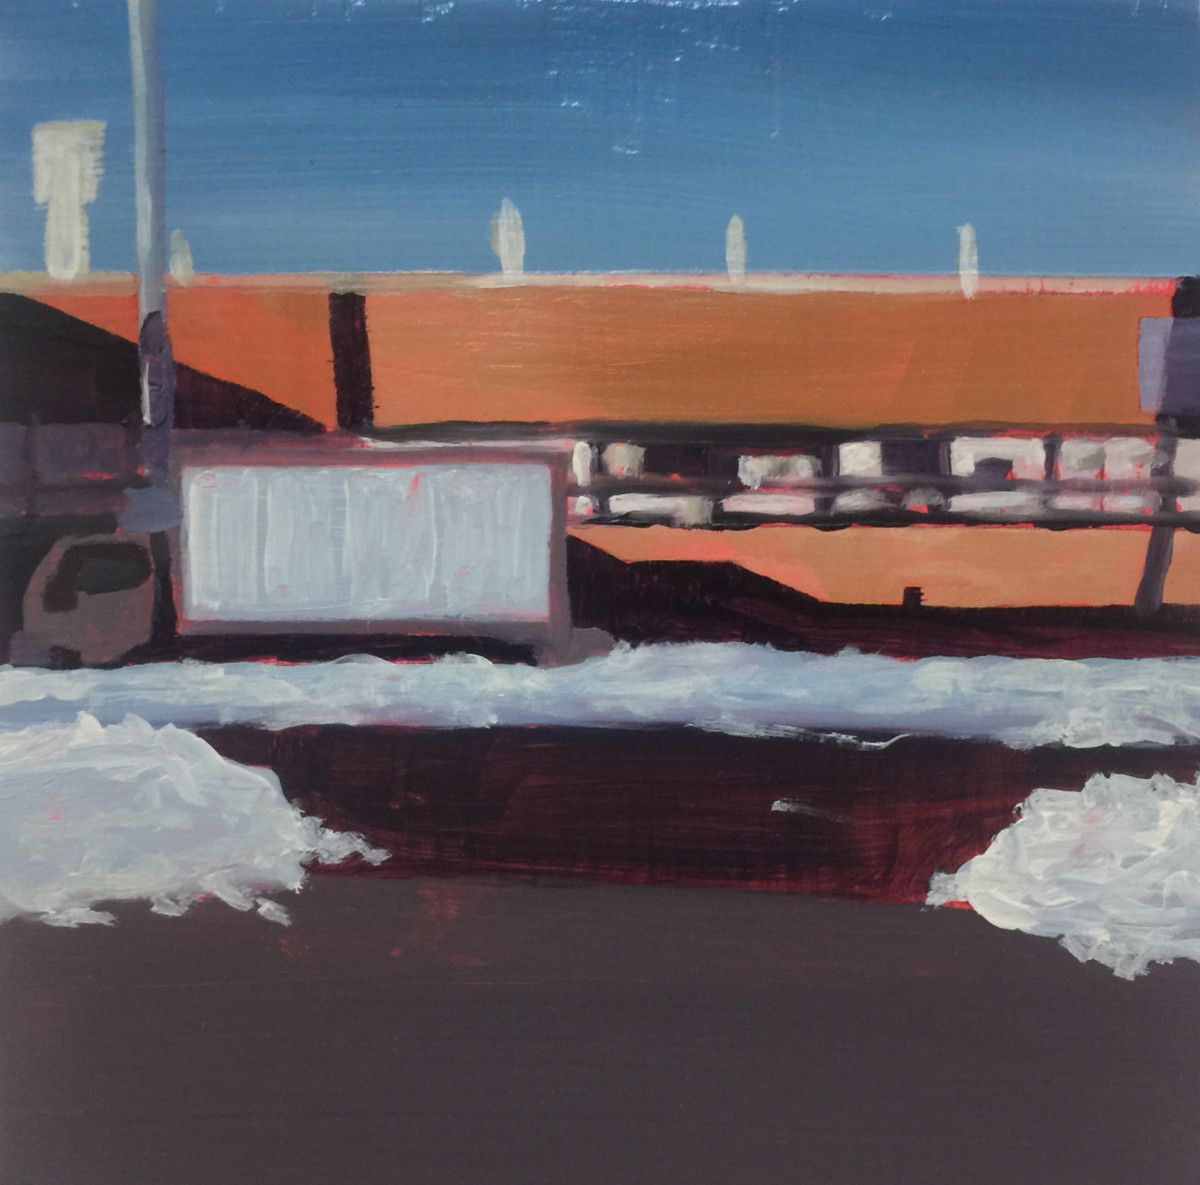 Truck in snow by Mathew Tucker 